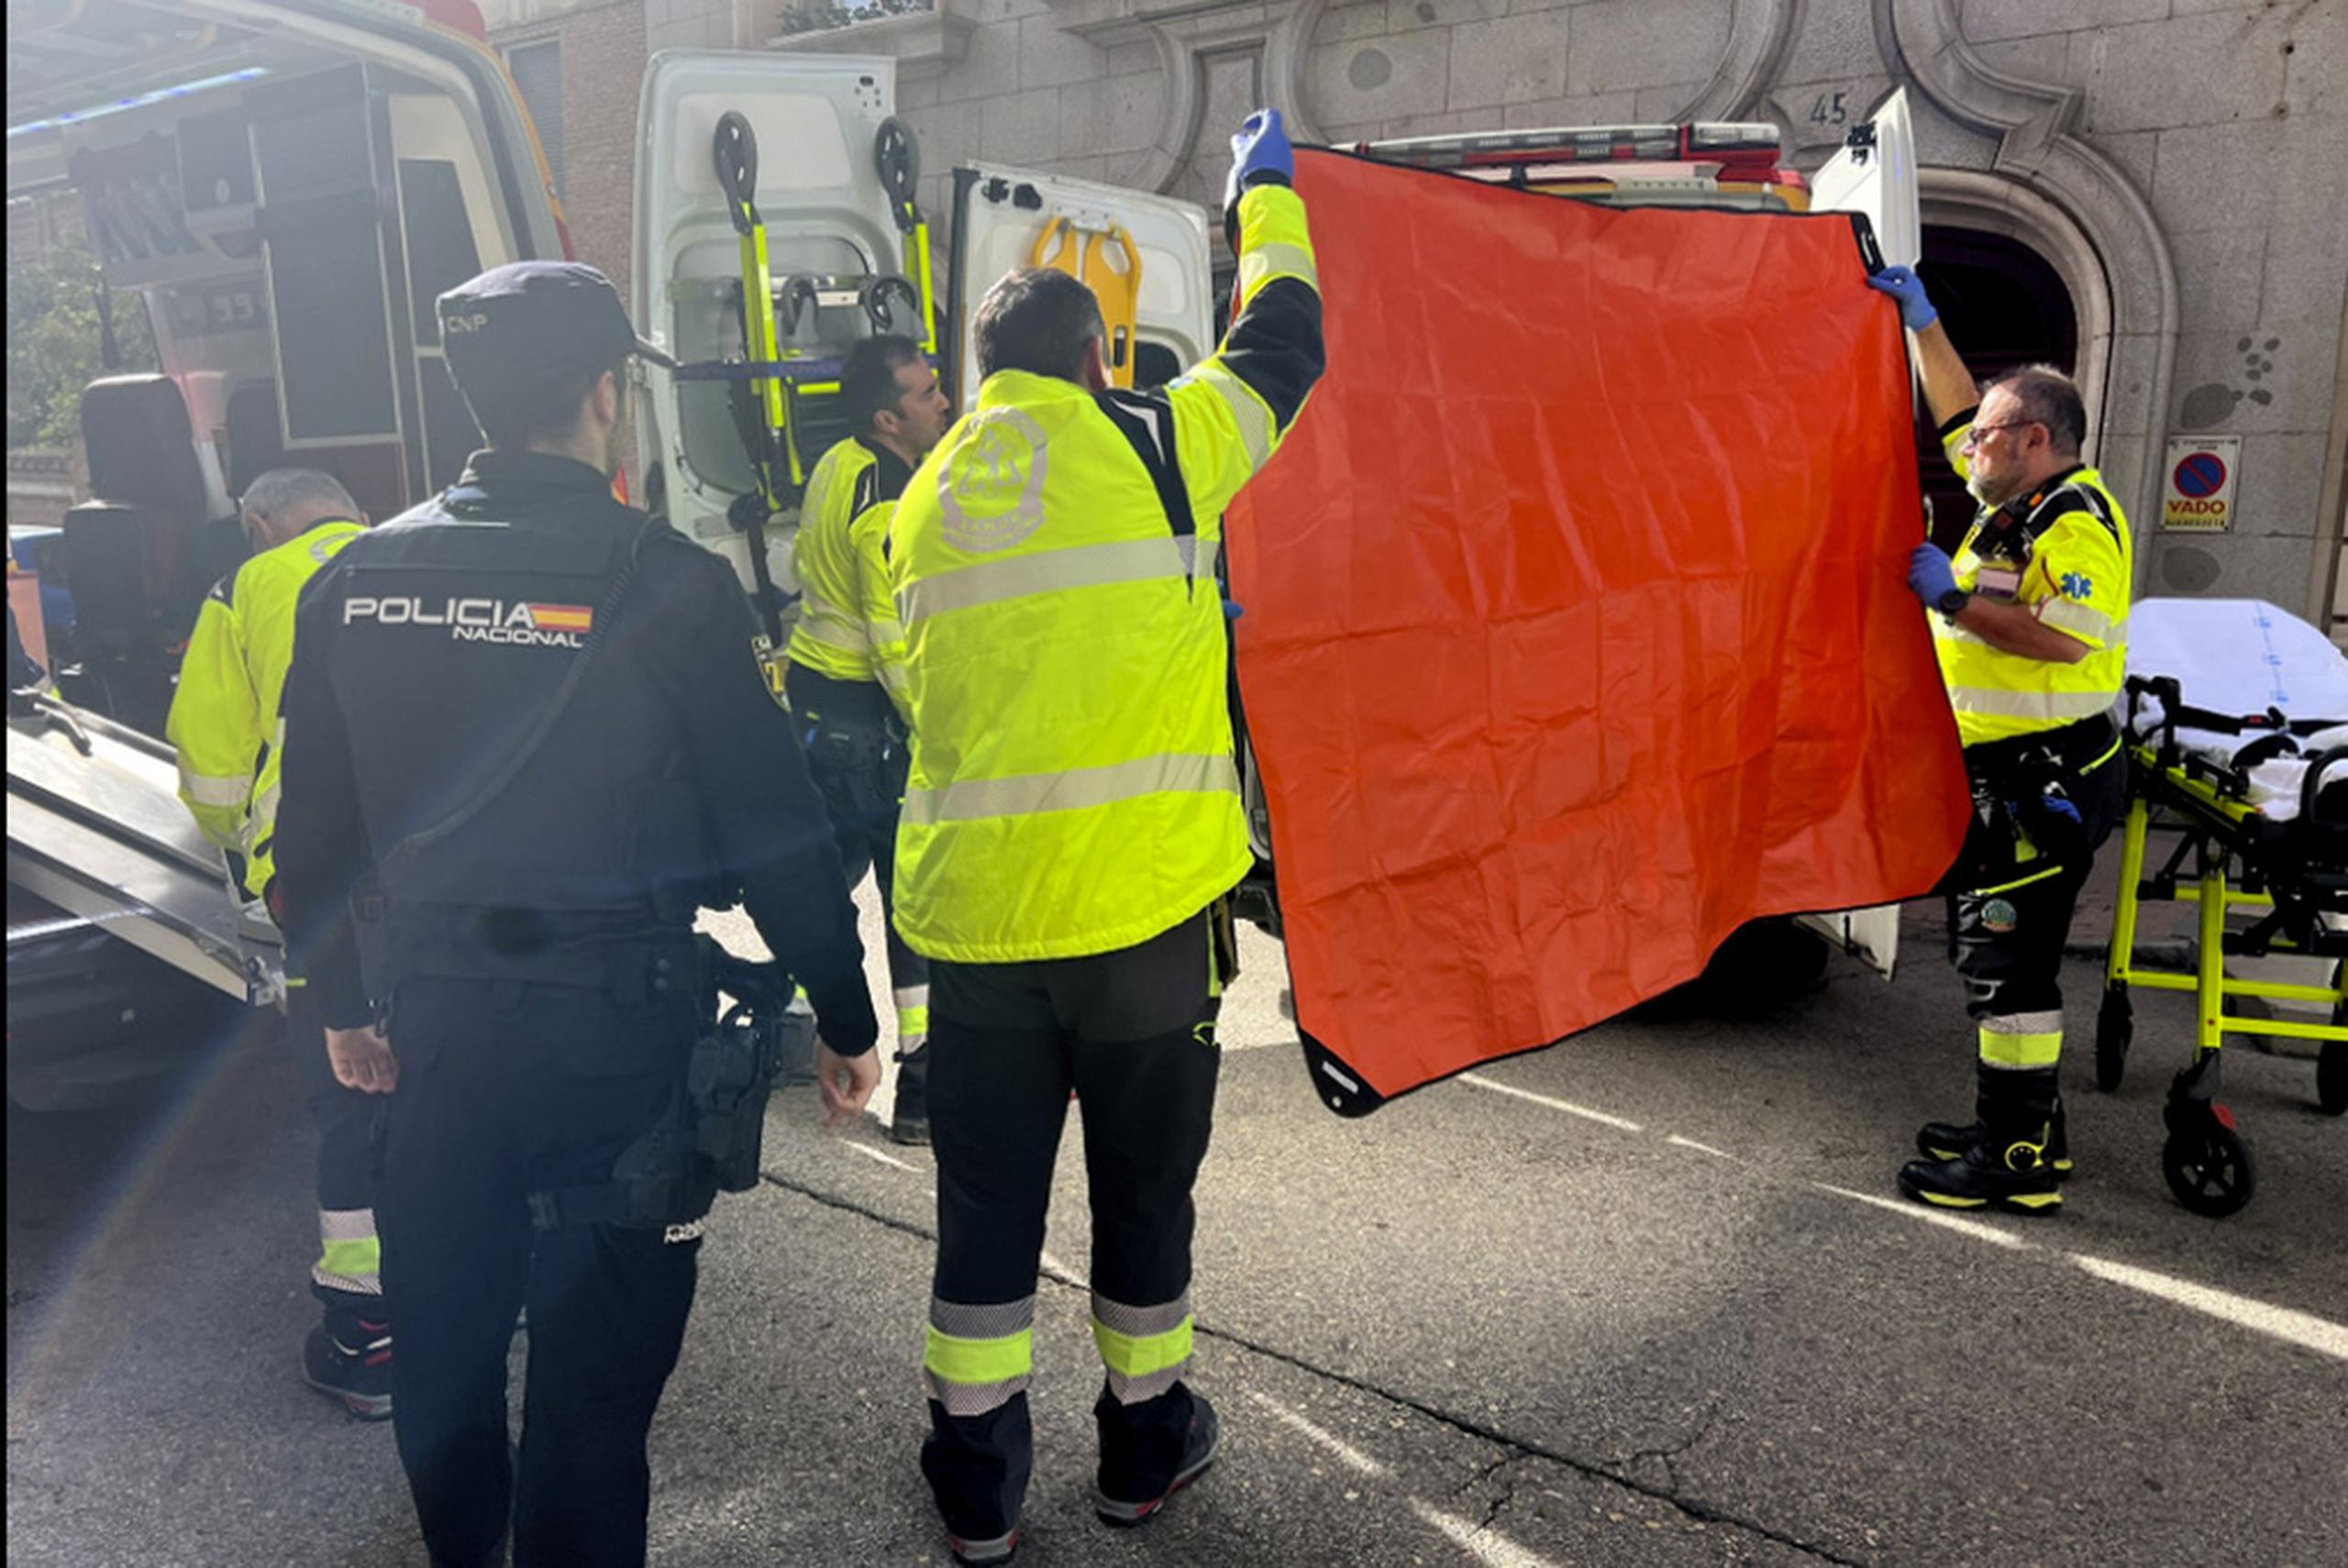 Paramédicos cubrieron la ambulancia donde atendían al político derechista español Alejo Vidal-Quadras tras ser baleado en Madrid el jueves.